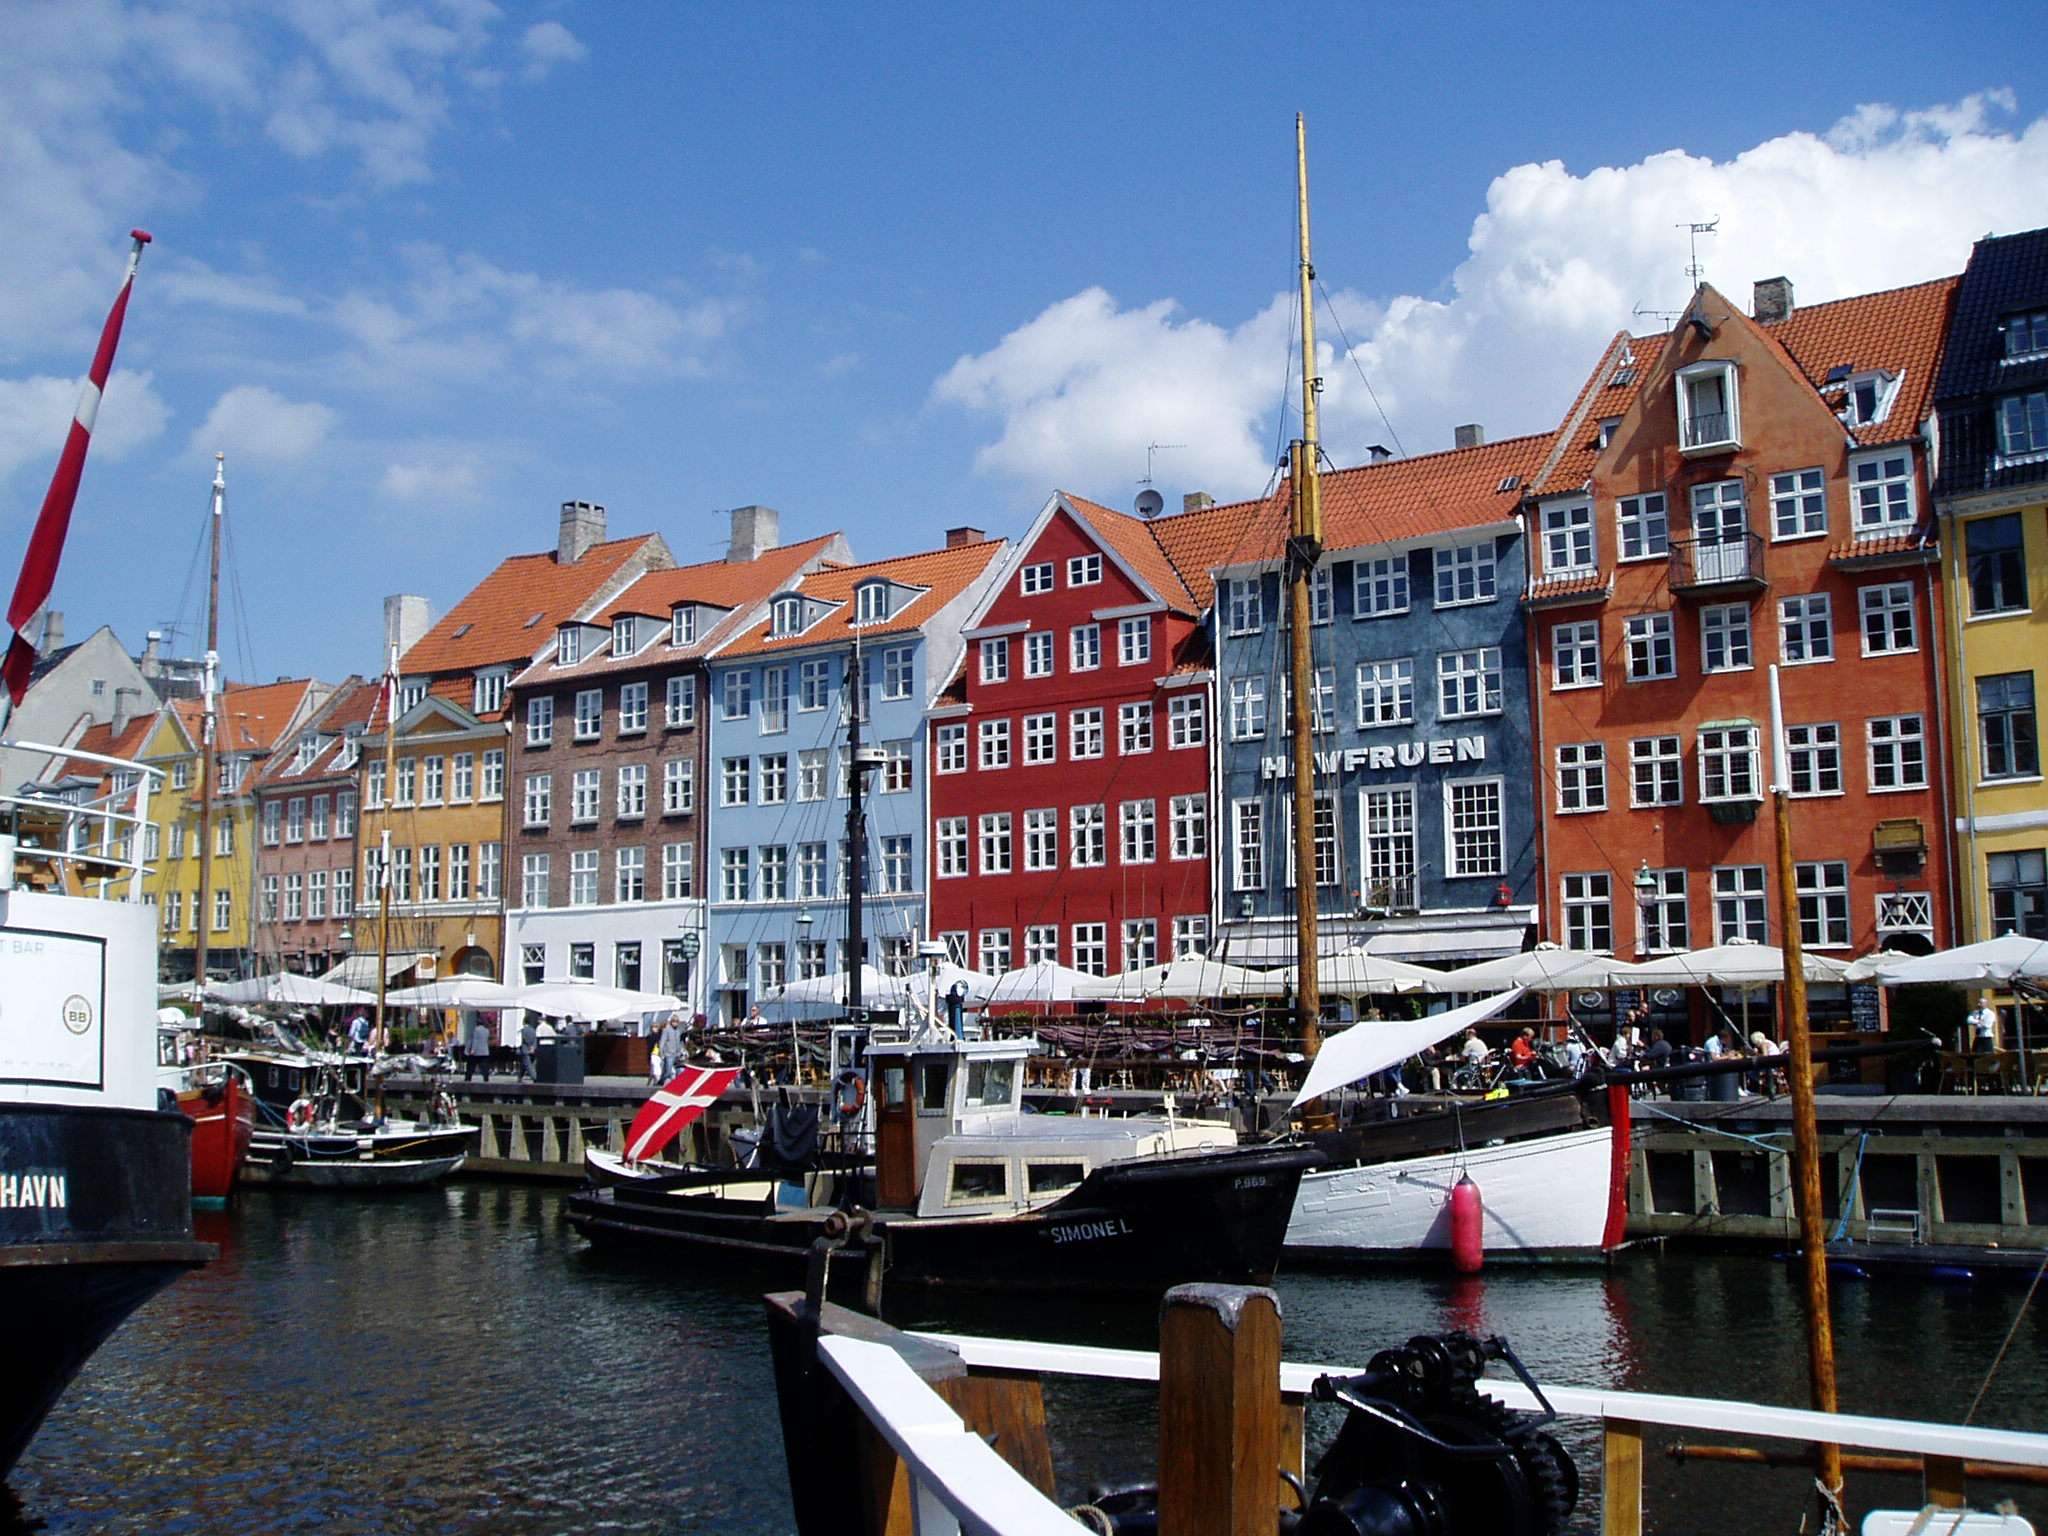 CRUCERO CAPITALES BALTICAS y FIORDOS - Blogs de Baltico y Fiordos - Embarque y primer día en Copenhagen (1)